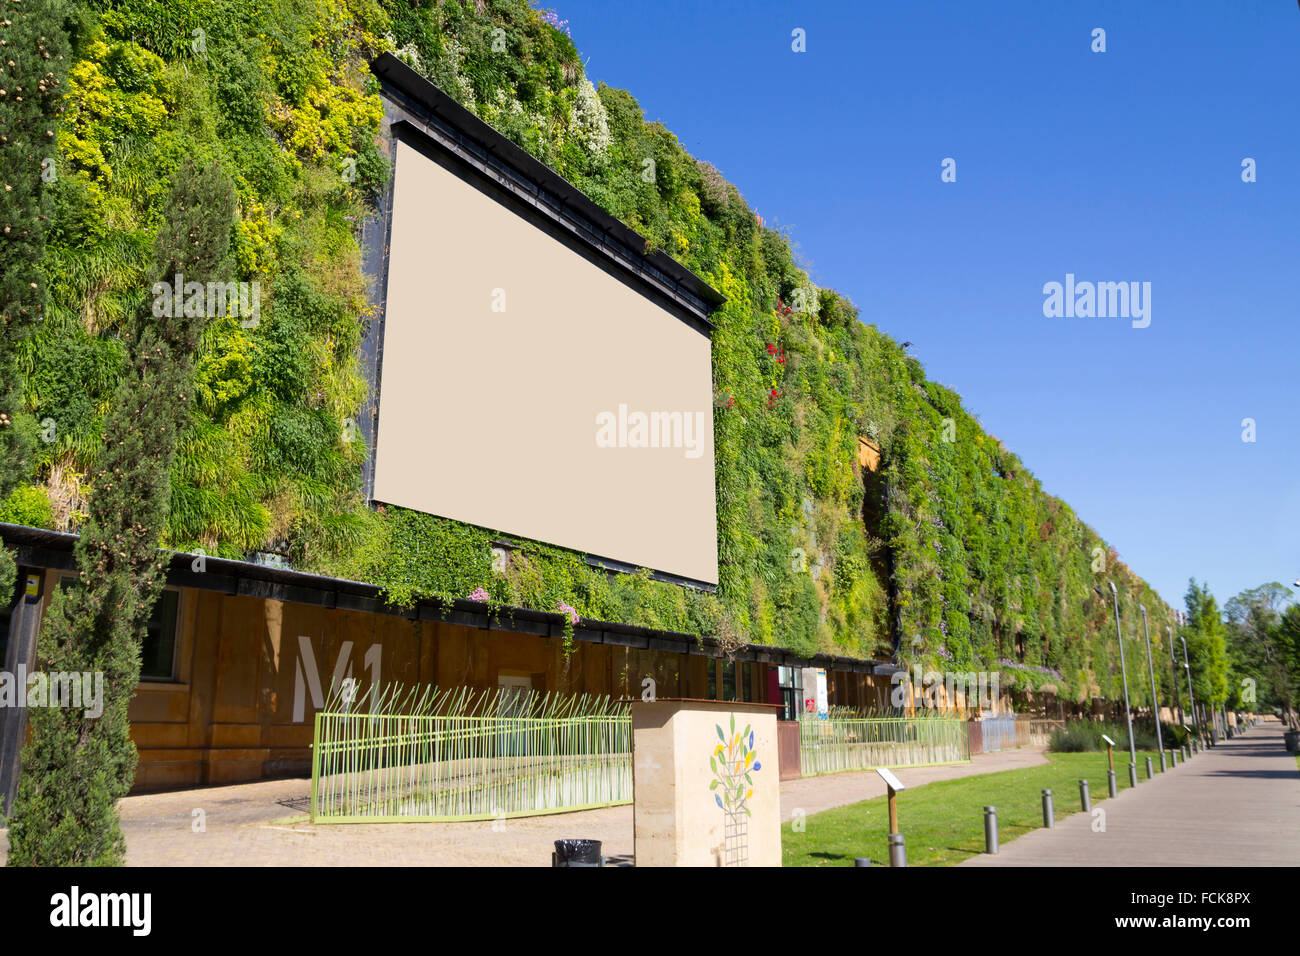 La construction durable, avec une façade verte Banque D'Images